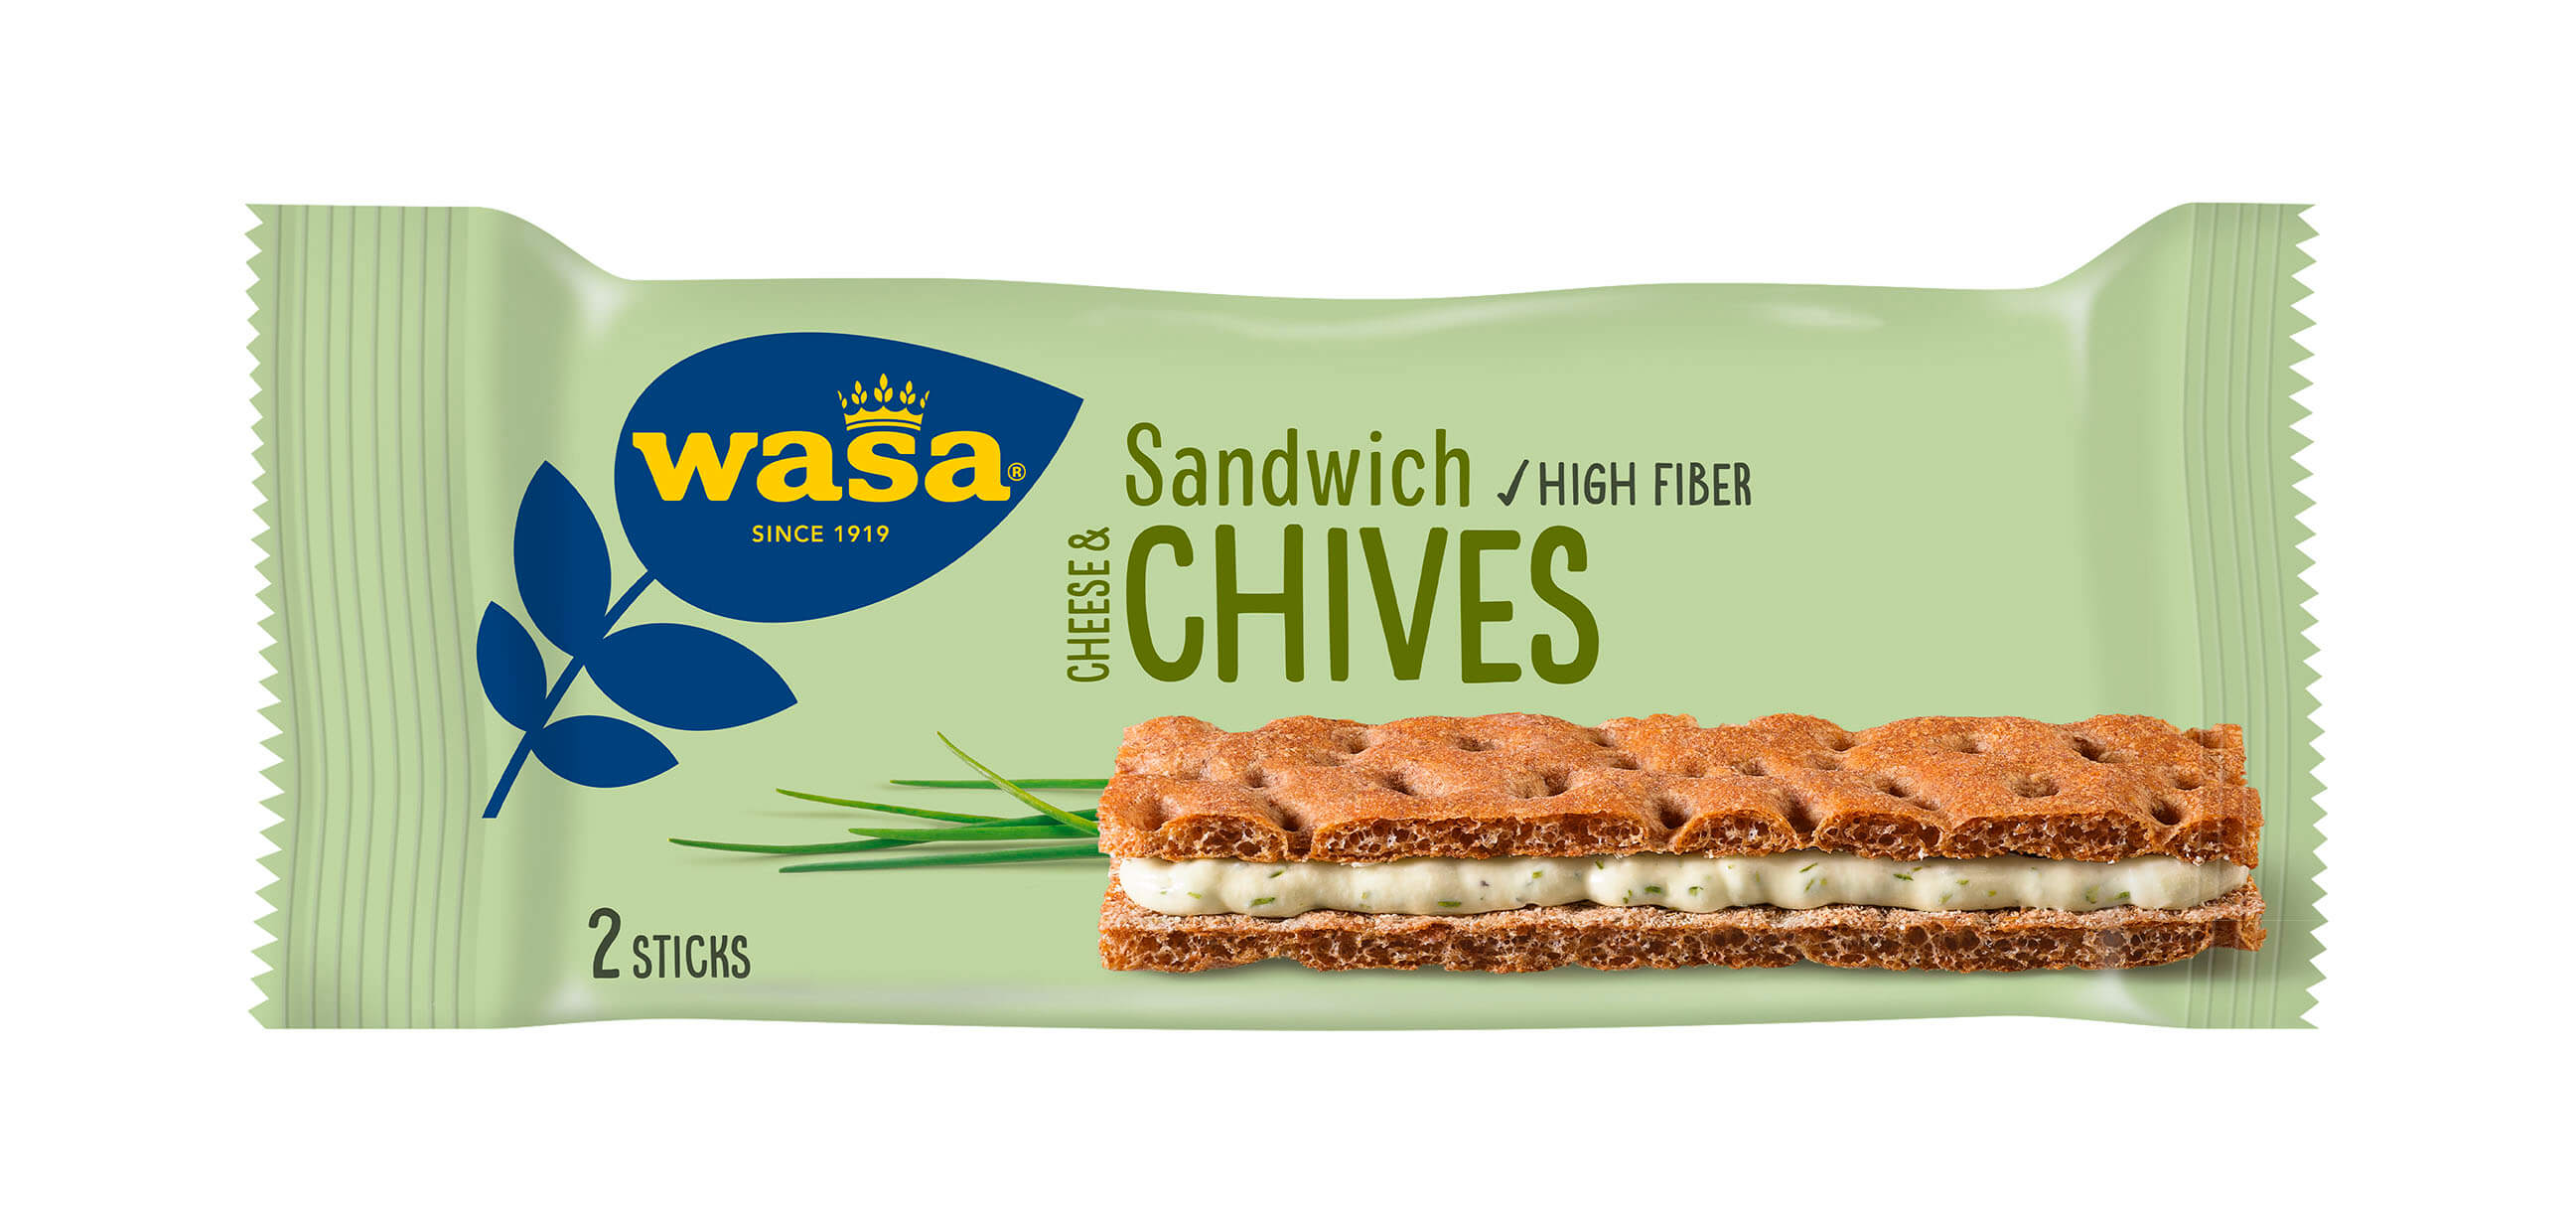 Wasa Sandwich Cheese & Chives - Upptäck det perfekta mellanmålet, knäckebröd med krämig ostfyllning. Utmärkt som enkelt mellanmål när du är på språng och som tips på mellis barn, efter skolan eller innan träning.